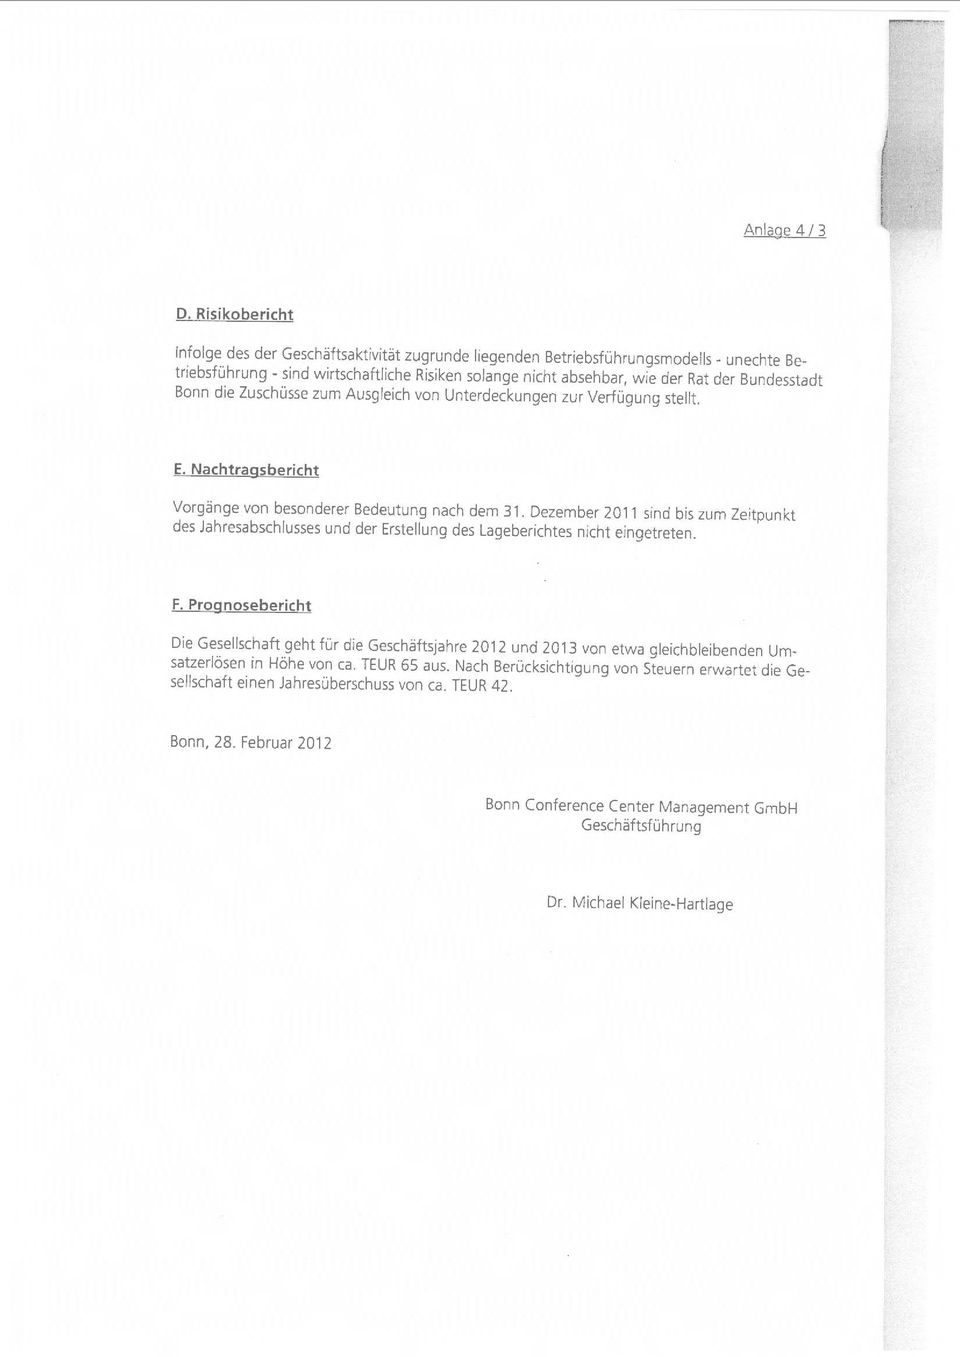 Bundesstadt Bonn die Zuschüsse zum Ausgleich von Unterdeckungen zur Verfügung stellt. E. Nachtragsbericht Vorgänge von besonderer Bedeutung nach dem 31.